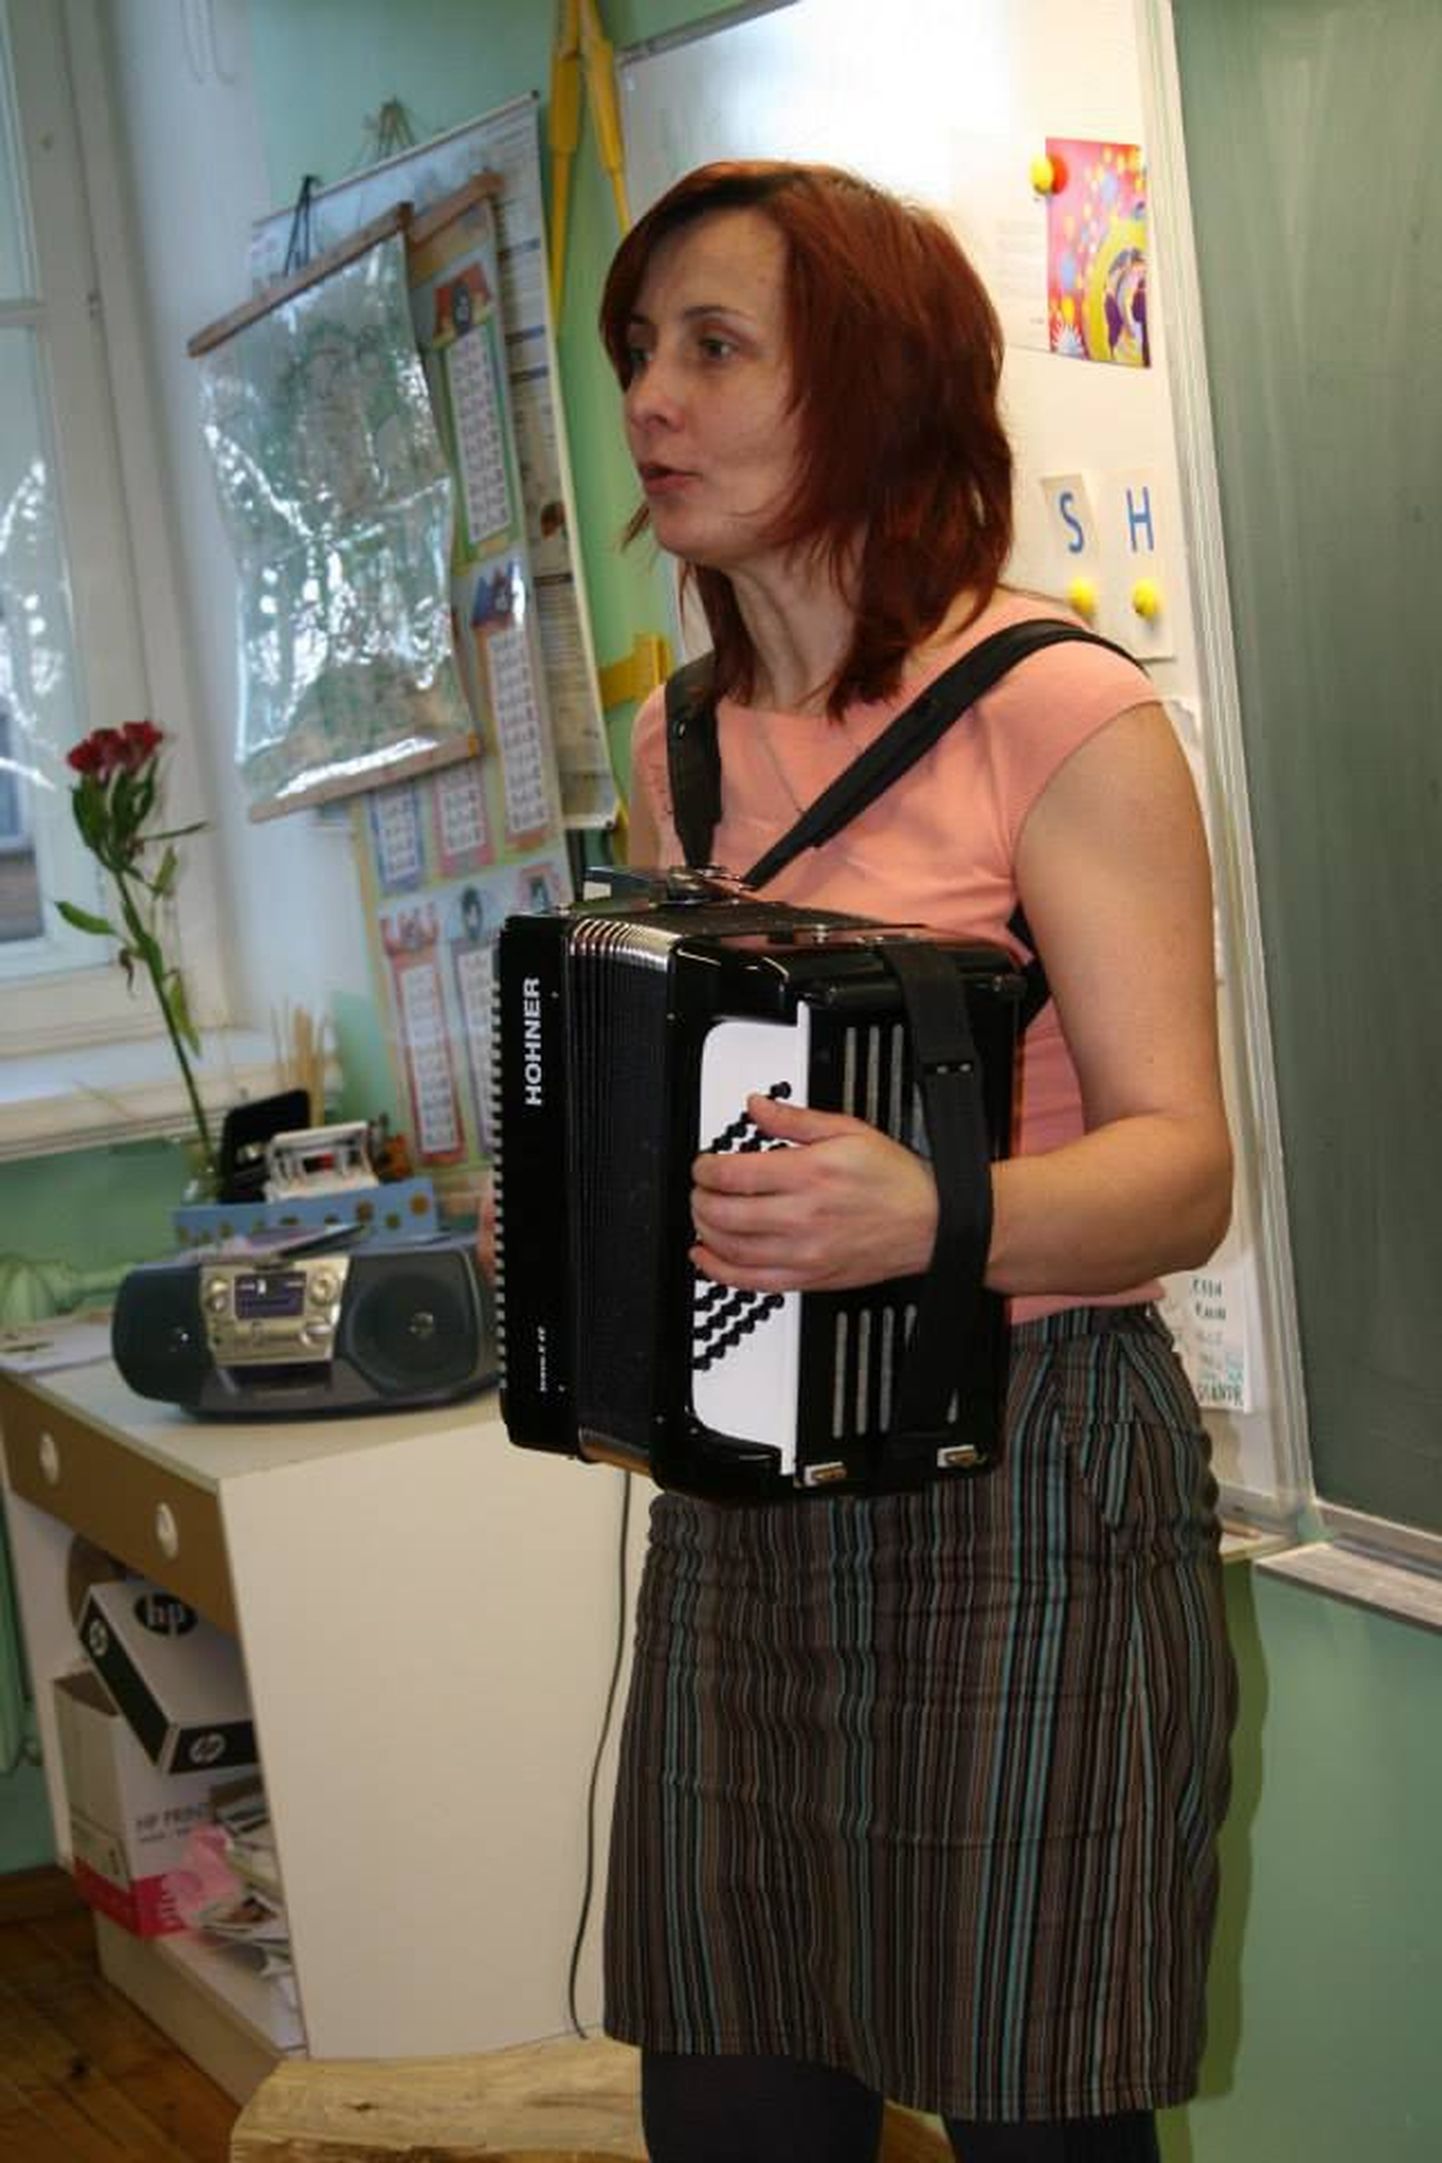 Sindi lasteaia muusikaõpetaja Ülle Jantson andis Vanalinna kooli õpikeskuse lastele põneva muusikatunni.